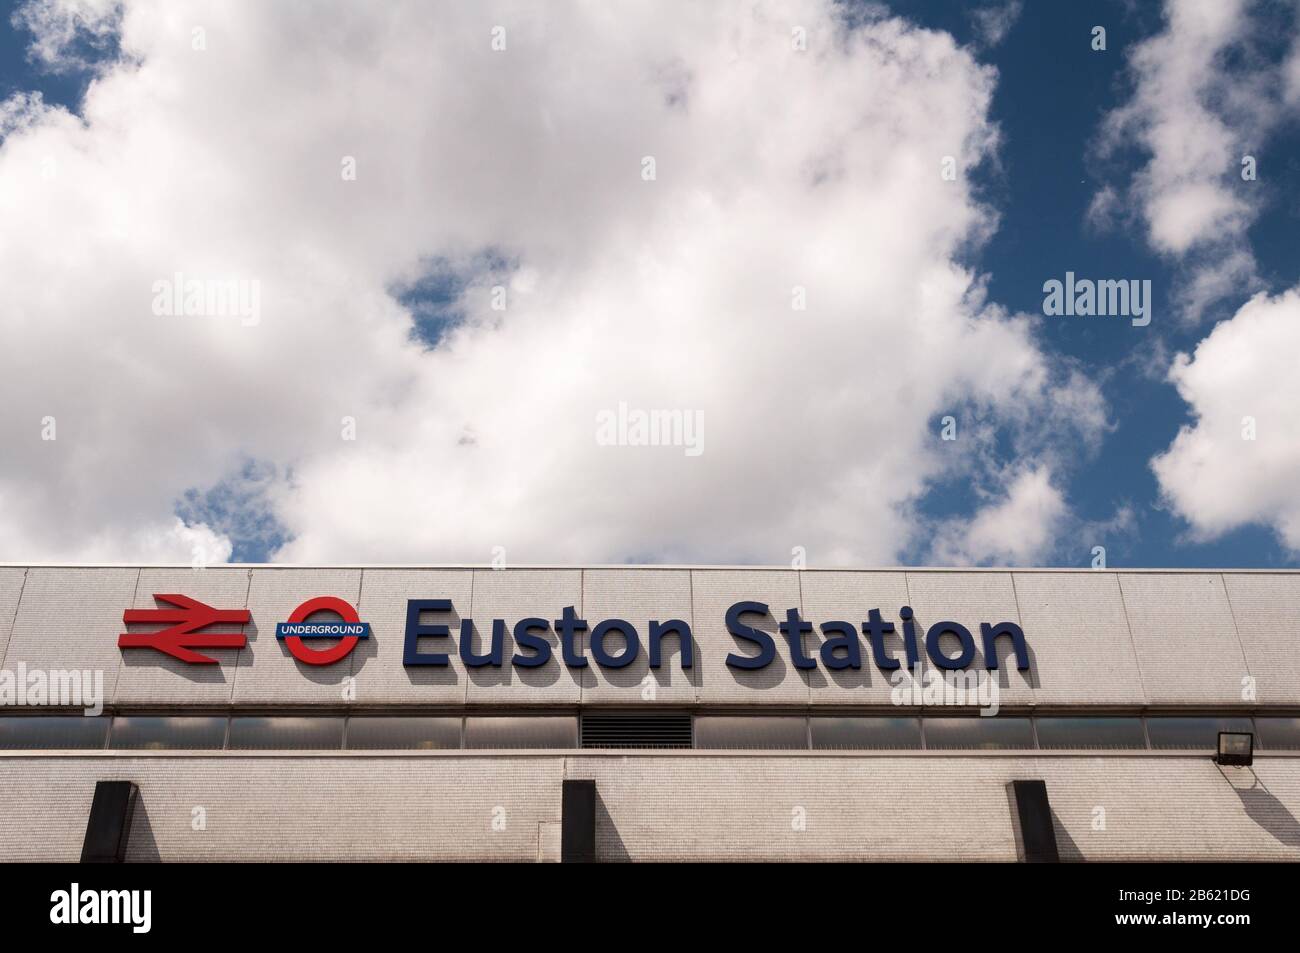 Londres, Angleterre, Royaume-Uni - 6 juillet 2011: Un grand panneau incorporant un logo British Rail à deux flèches et London Underground cocarde annonce Euston Station Banque D'Images